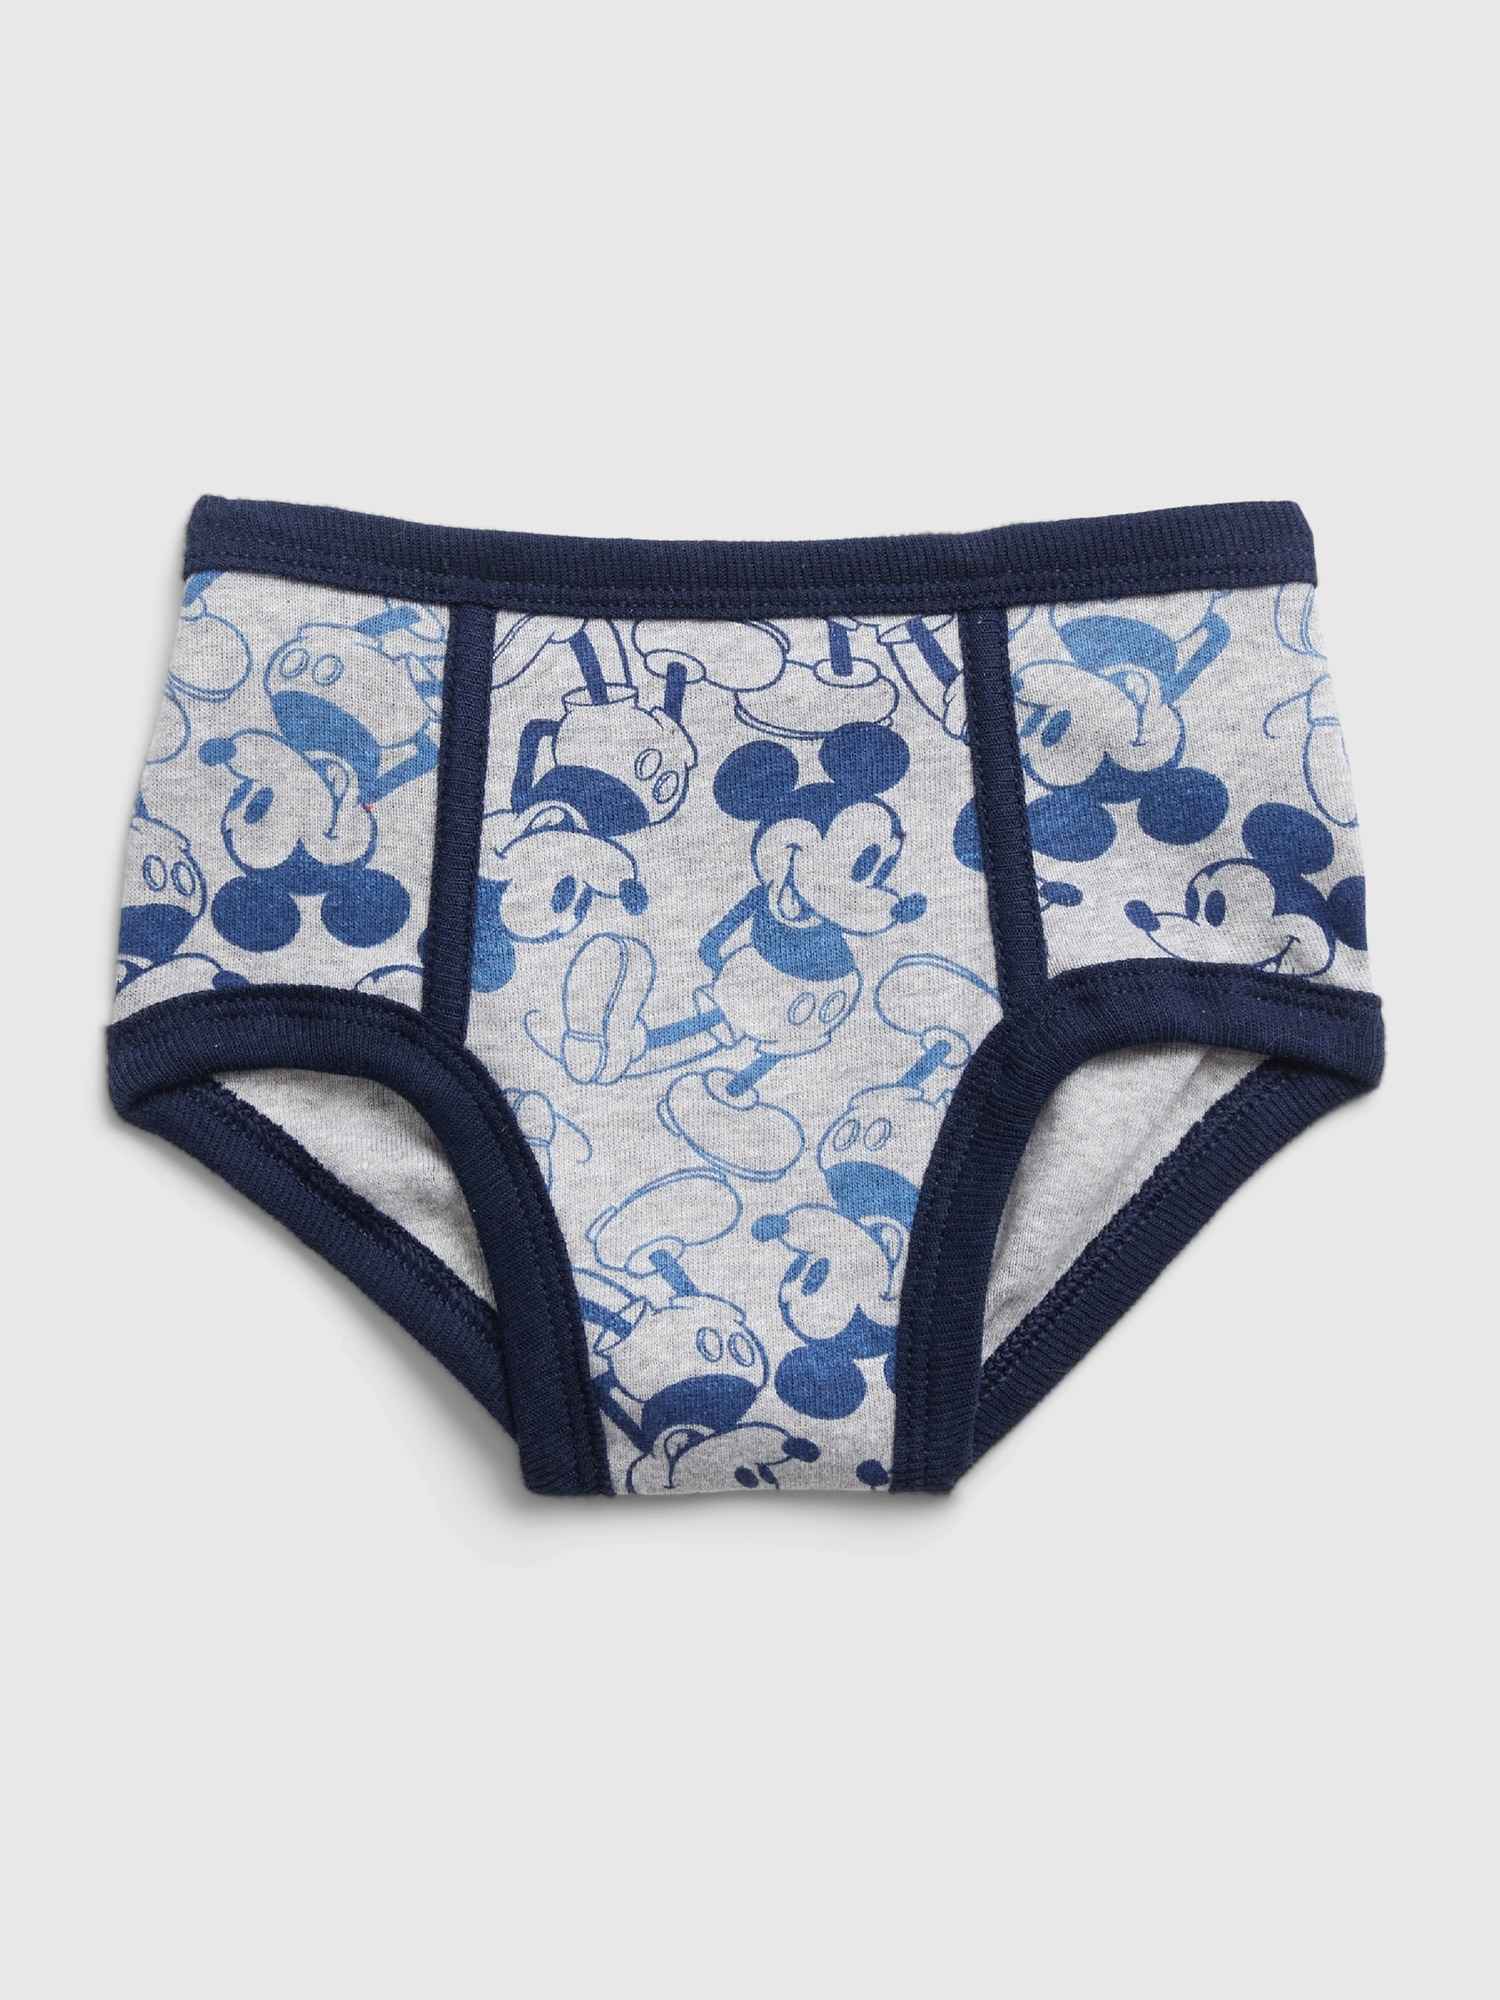 Disney Junior Mickey Mouse 3 Briefs Underwear 100% Cotton Size 2T / 3T